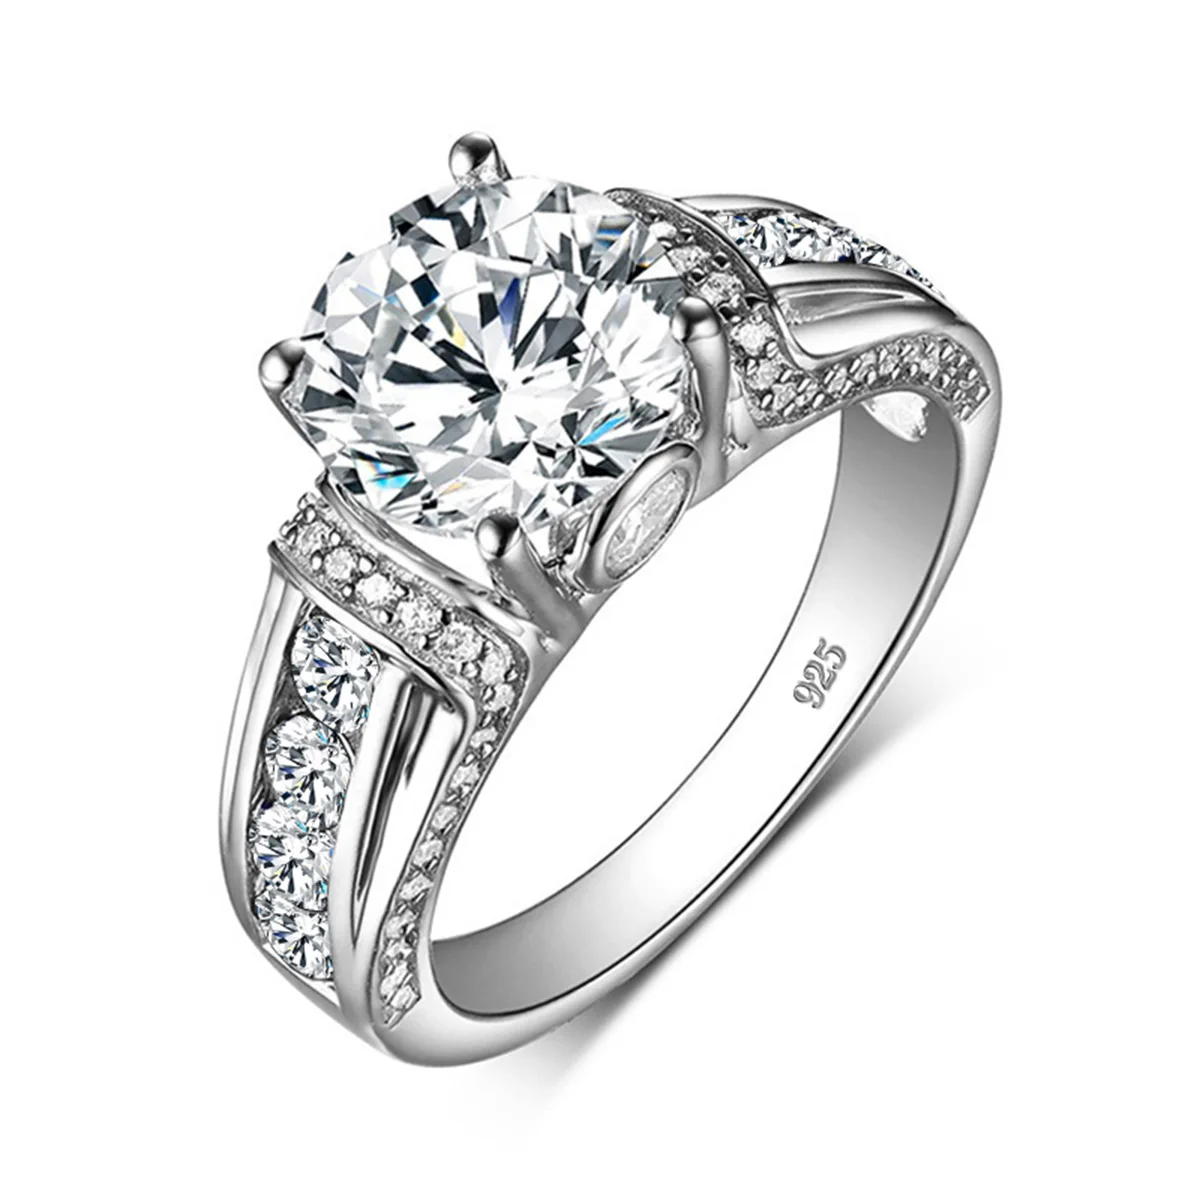 Szjinao anelli in Moissanite reale da 2 carati per donna gemma 100% gioielli in argento Sterling 925 certificati per fidanzamento di nozze